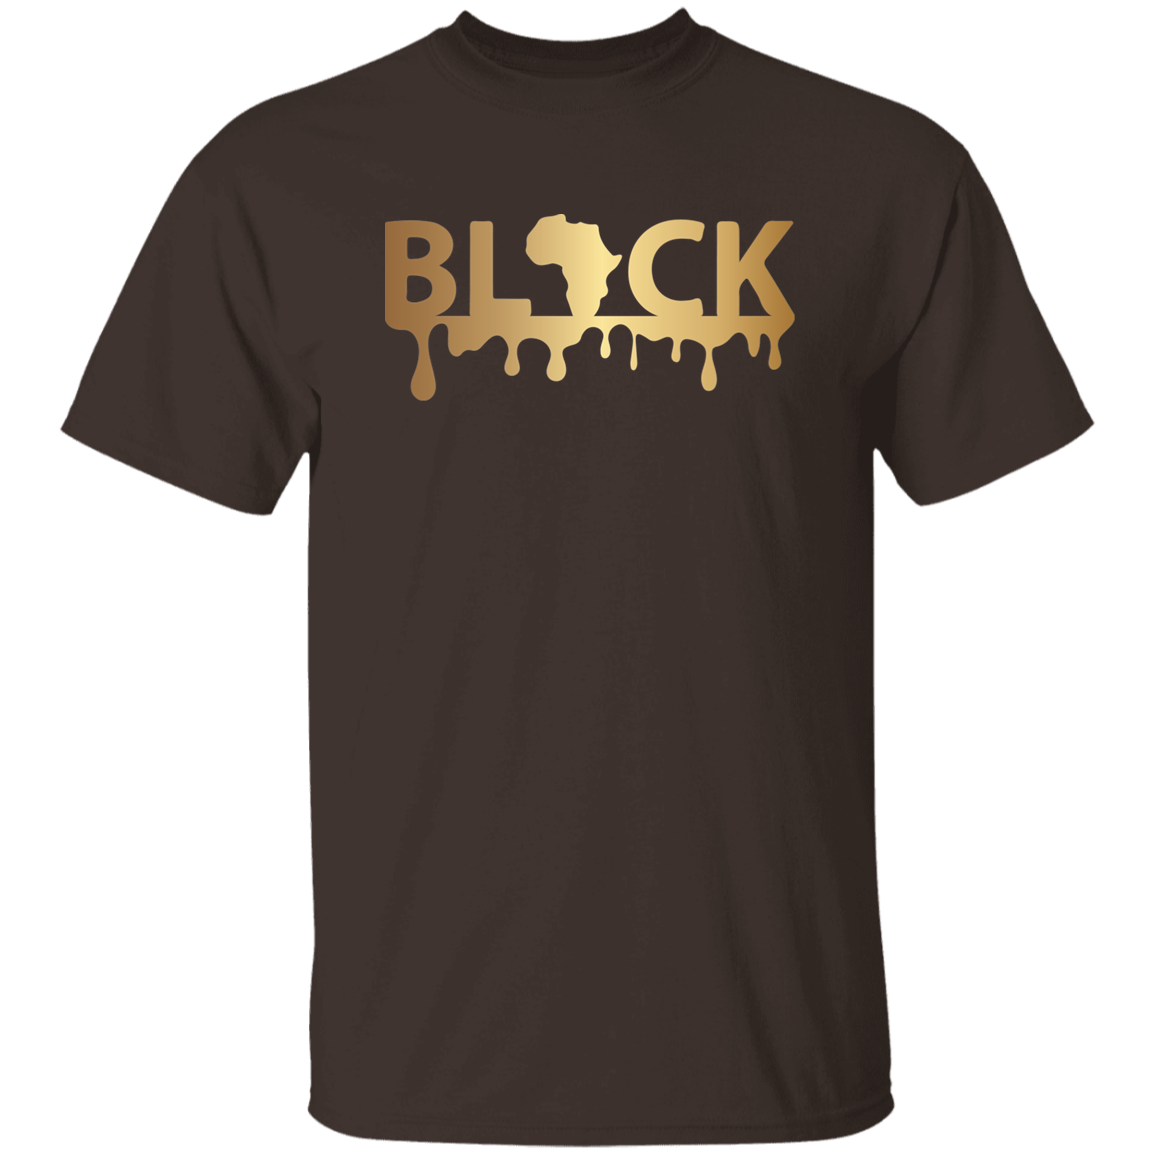 Black T-Shirt